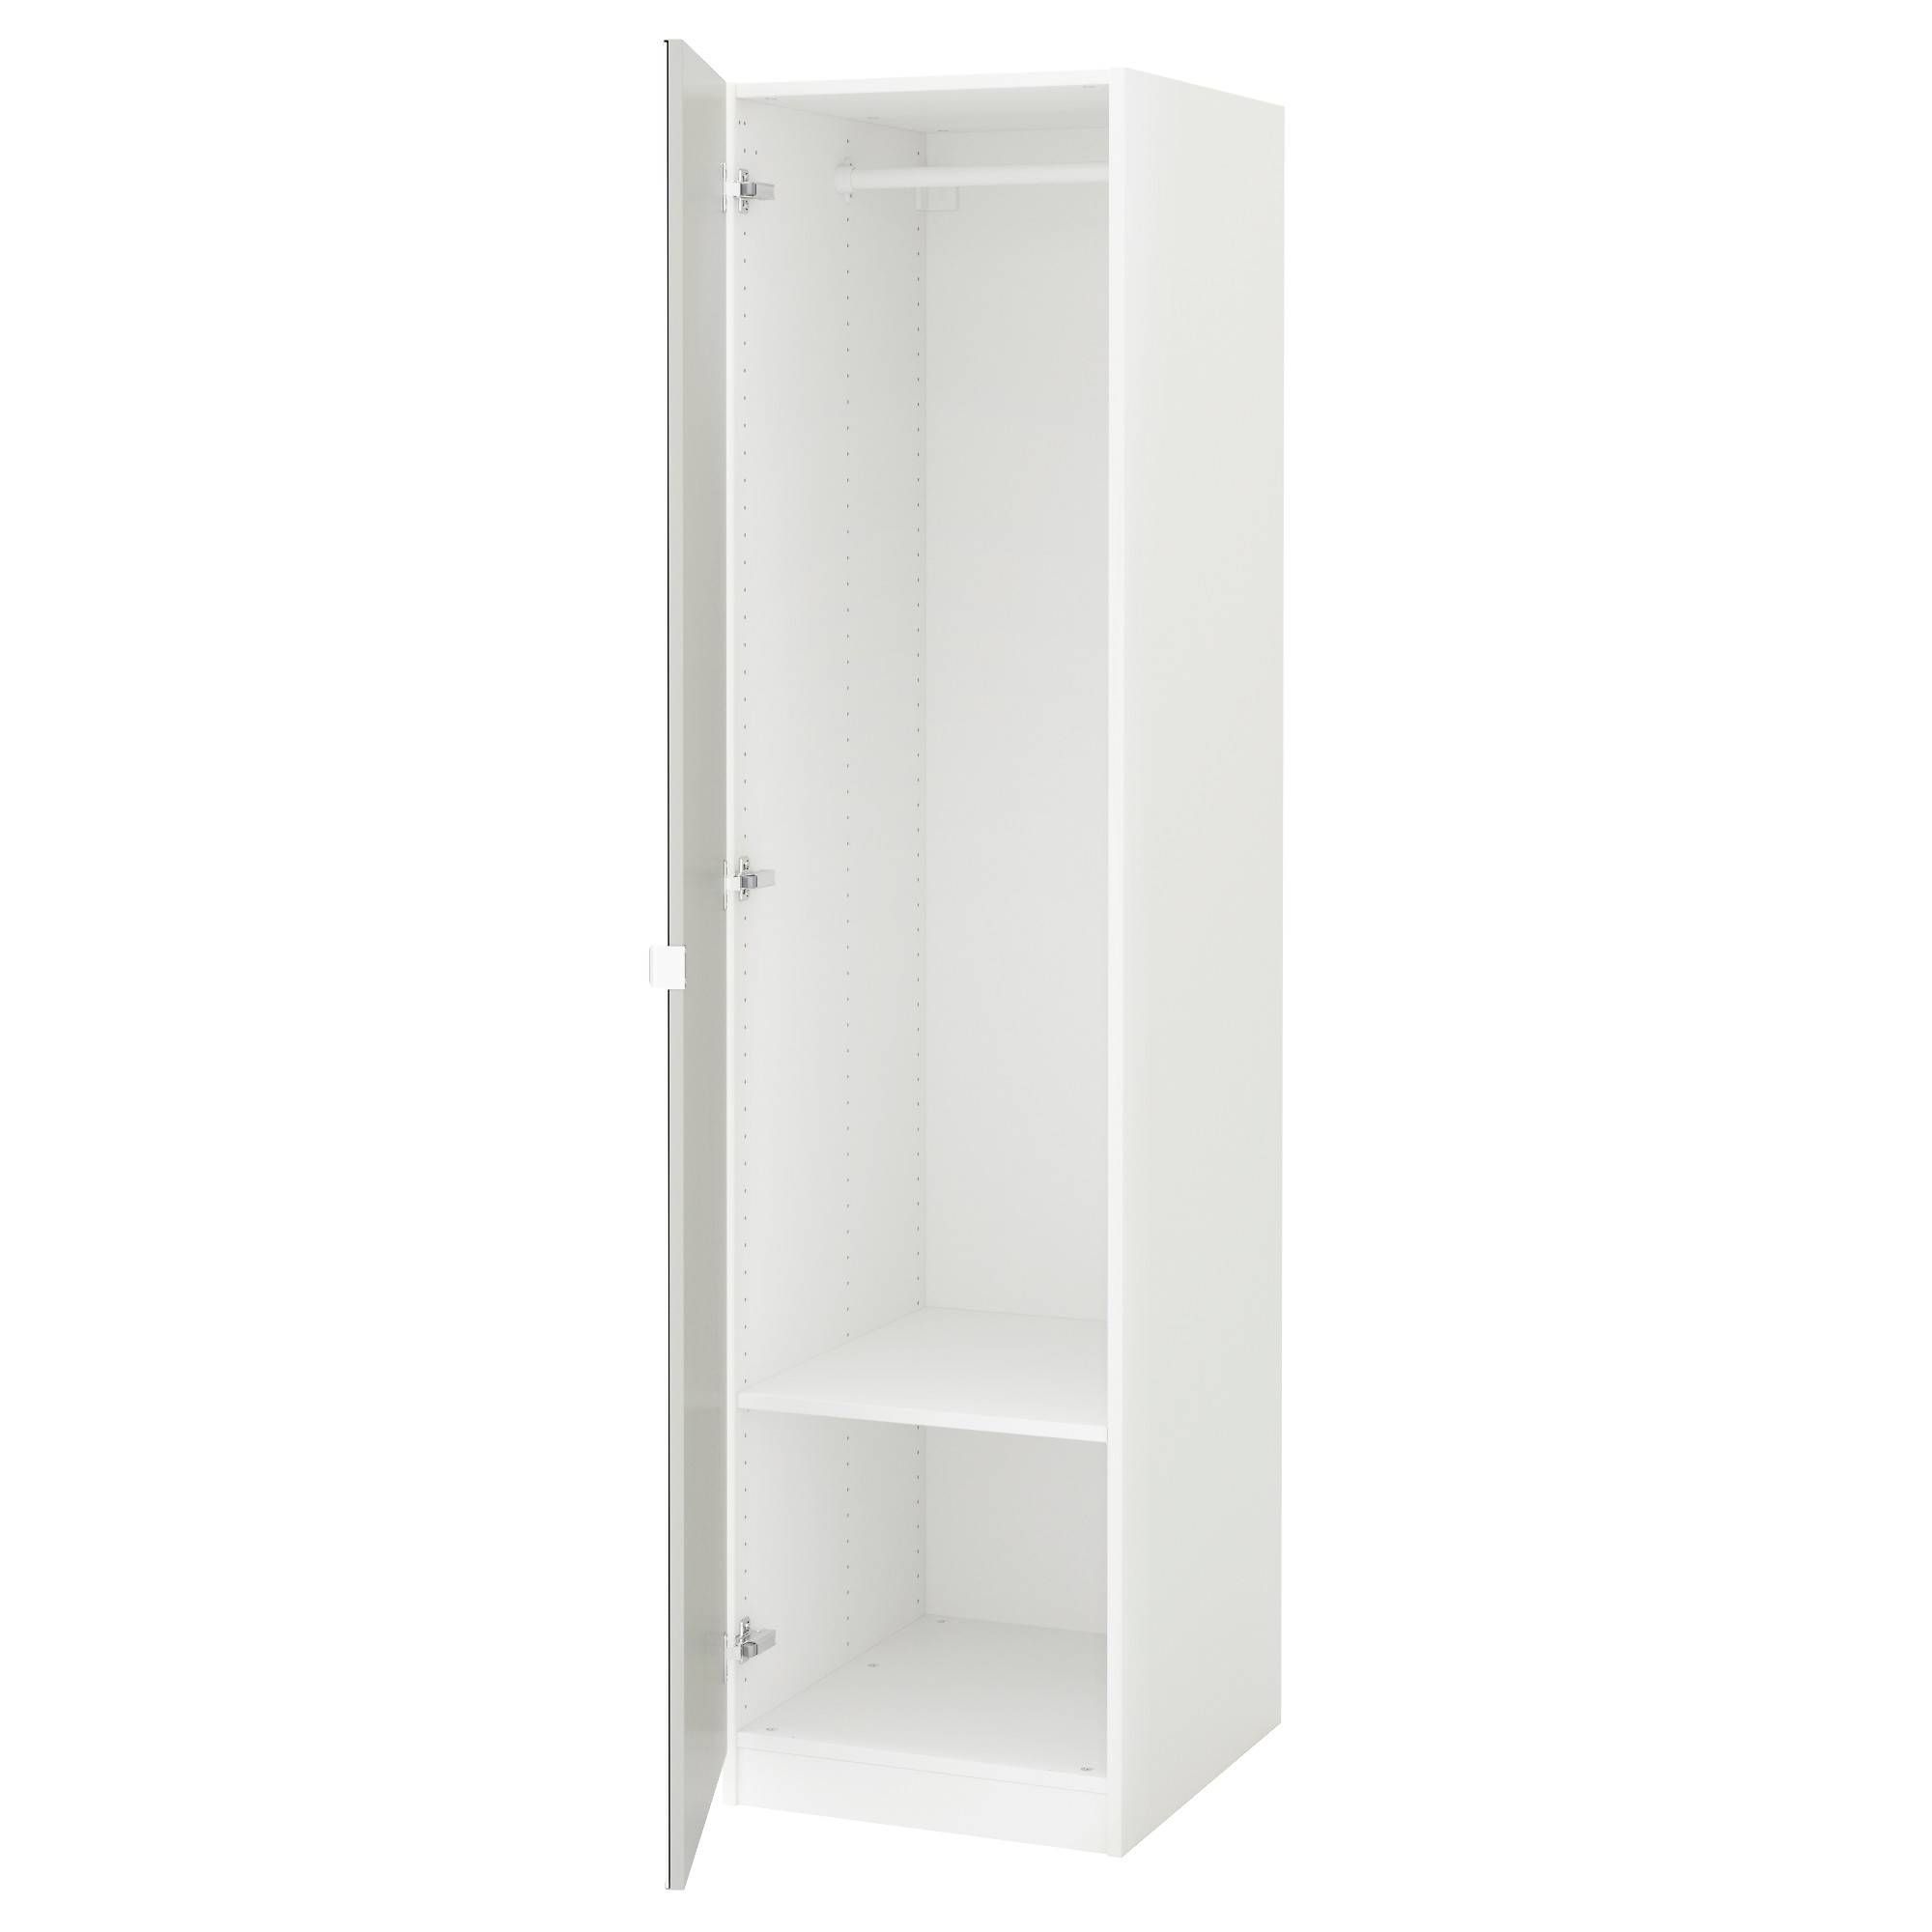 Pax Wardrobe White/vikedal Mirror Glass 50x60x201 Cm – Ikea With Regard To Single White Wardrobes With Mirror (View 2 of 15)